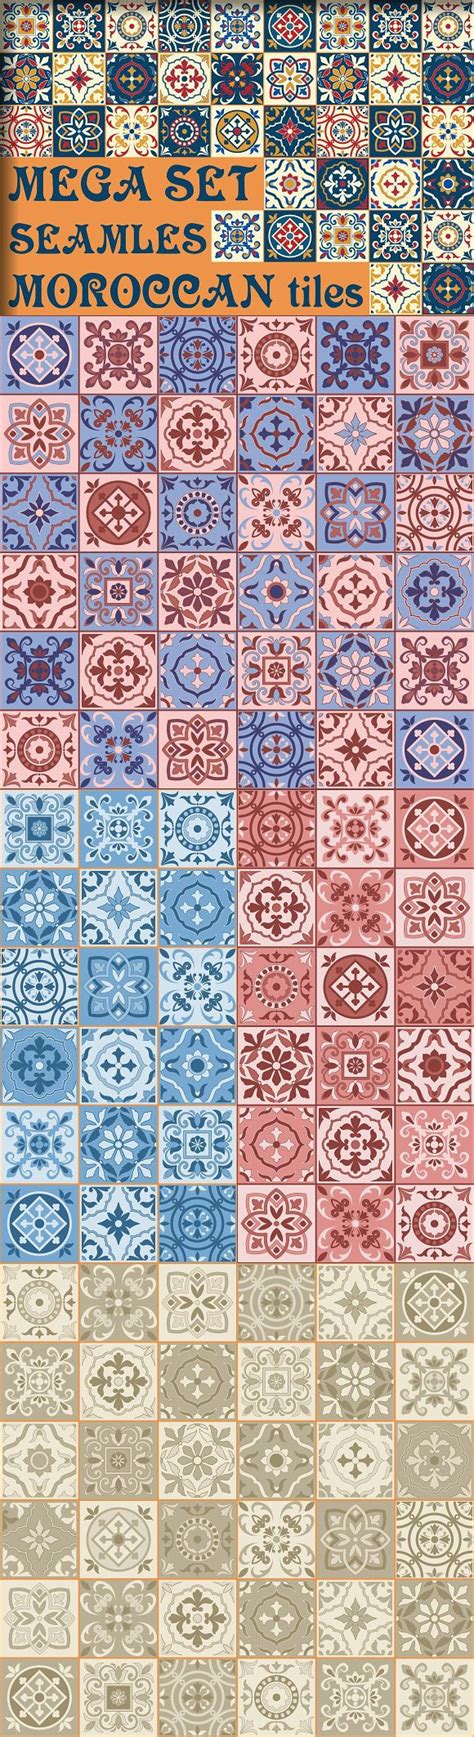 Moroccan Tiles 5 Shades Seamless Moroccan Tiles Seamless Mosaic